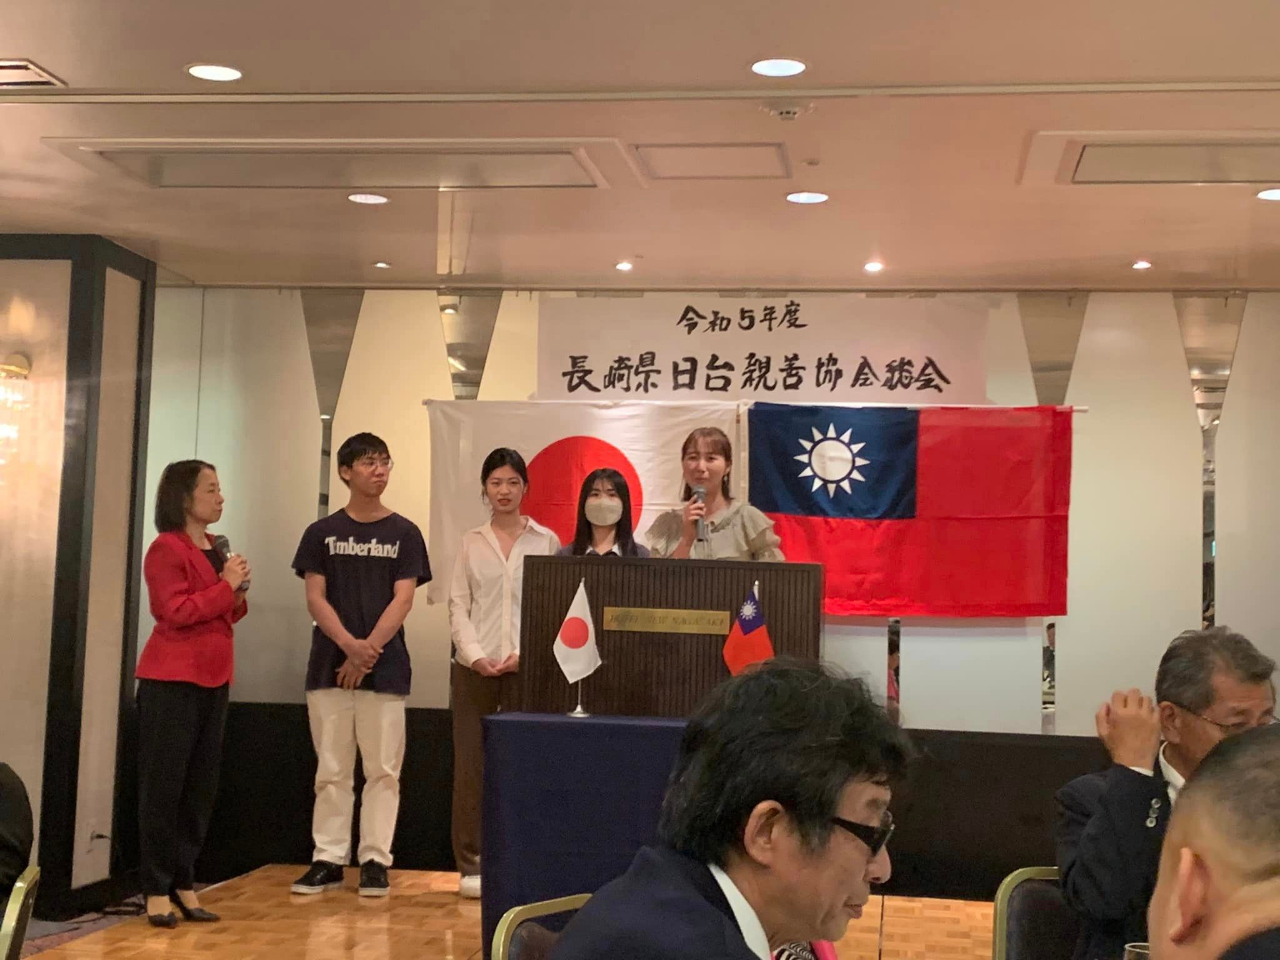 陳銘俊処長は7月14日「長崎県日台親善協会総会」にご参加し、台湾人留学生も一緒に楽しんでいました。